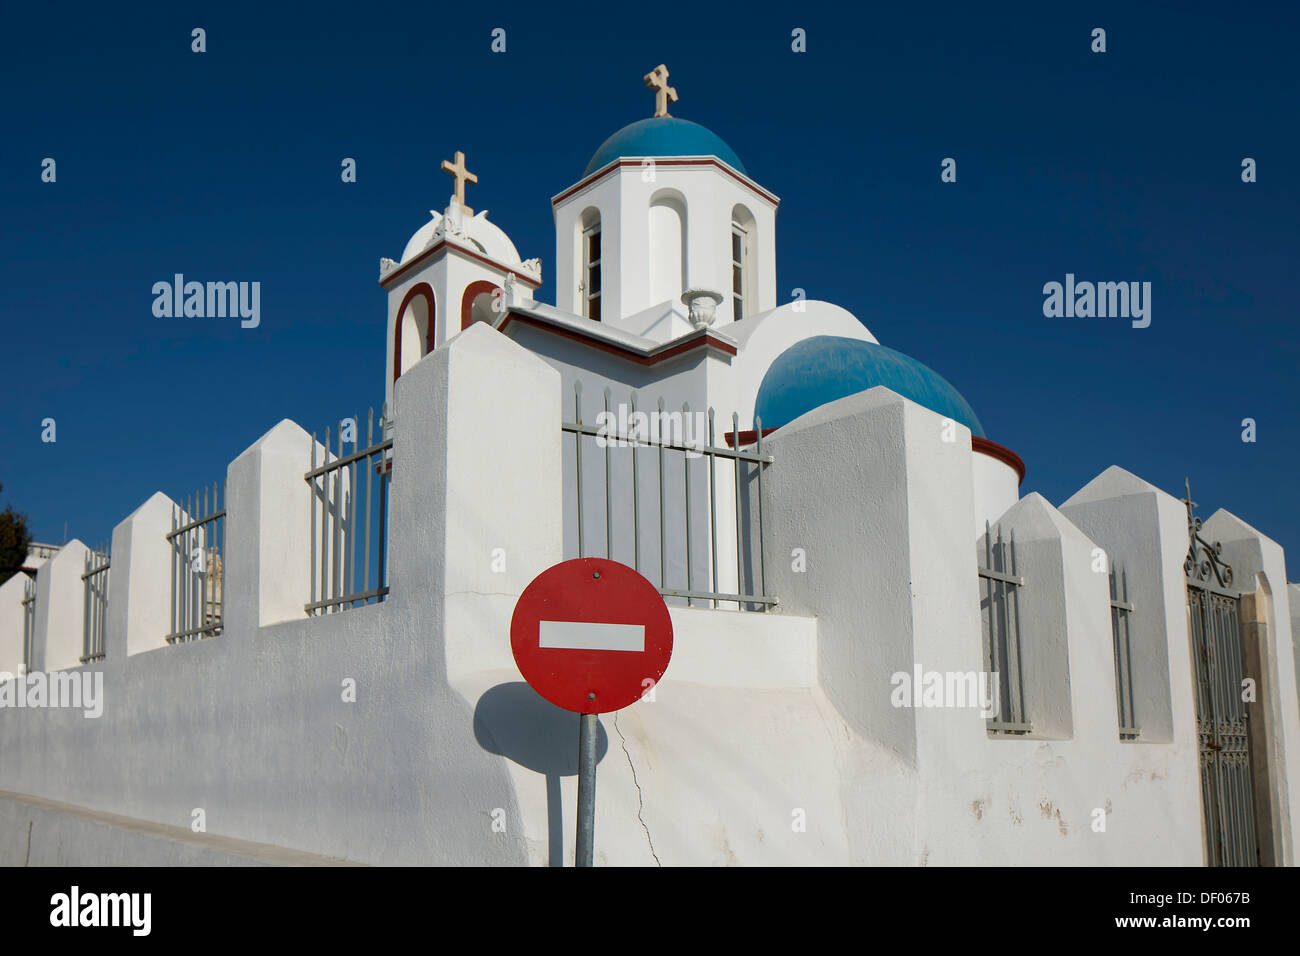 Église de Fira avec une entrée-interdits signe, Fira, Santorin, Cyclades, Grèce Banque D'Images